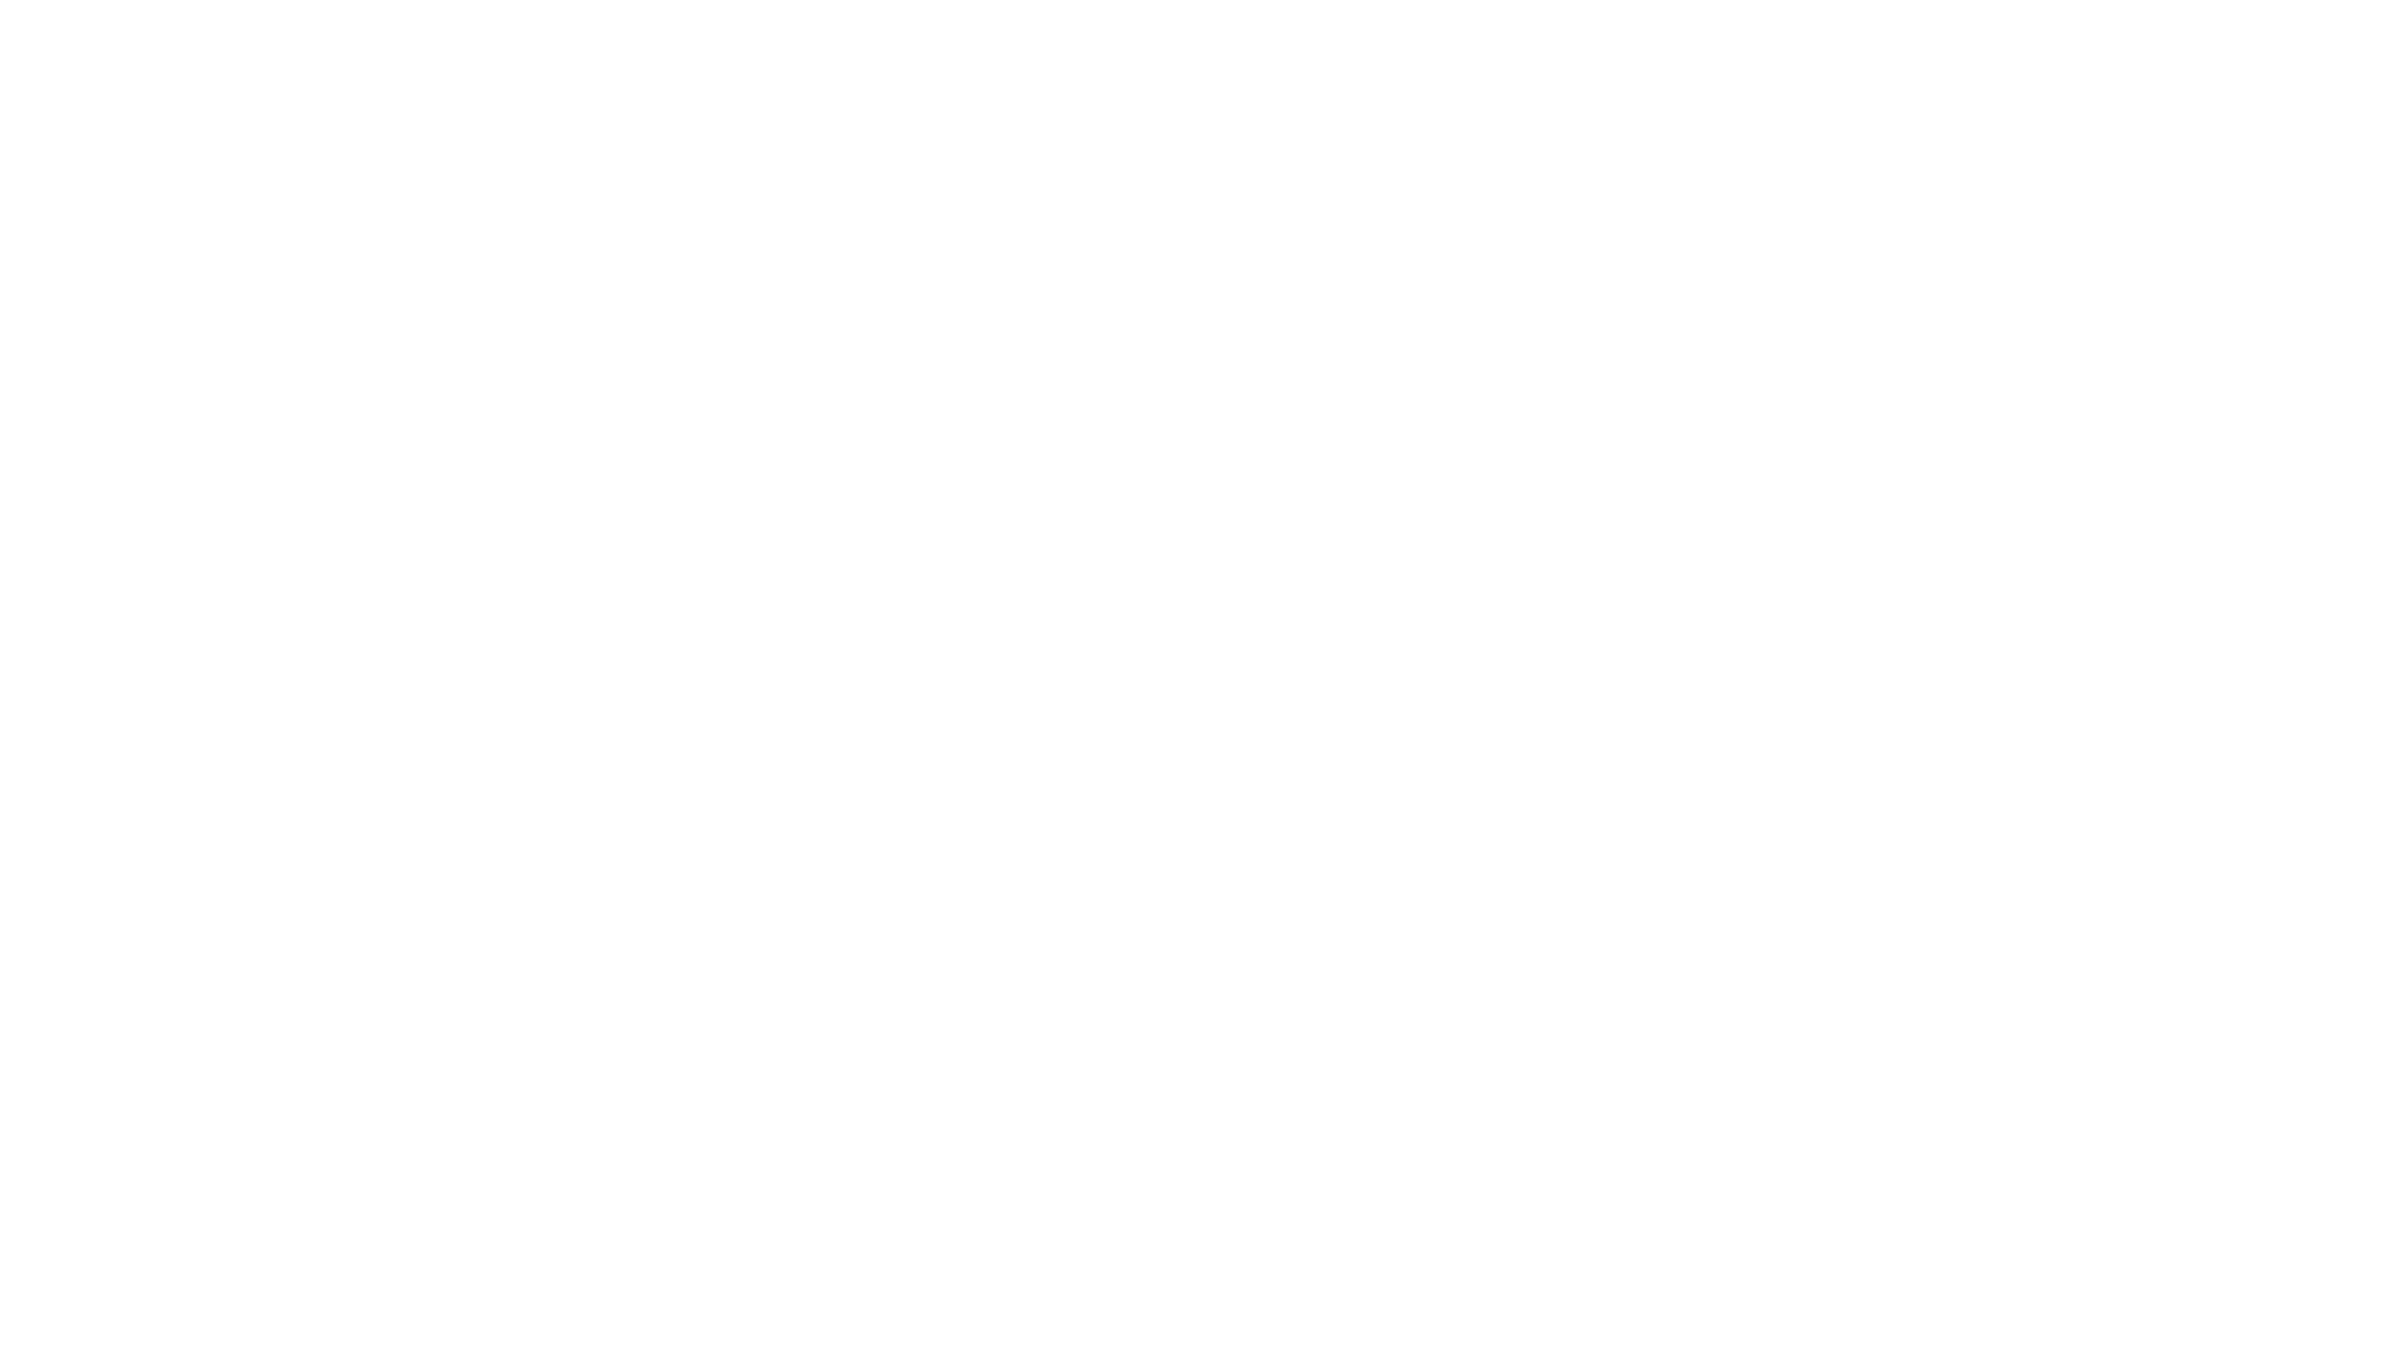 Airlock Laurels Rome Web Awards Art Direction.png